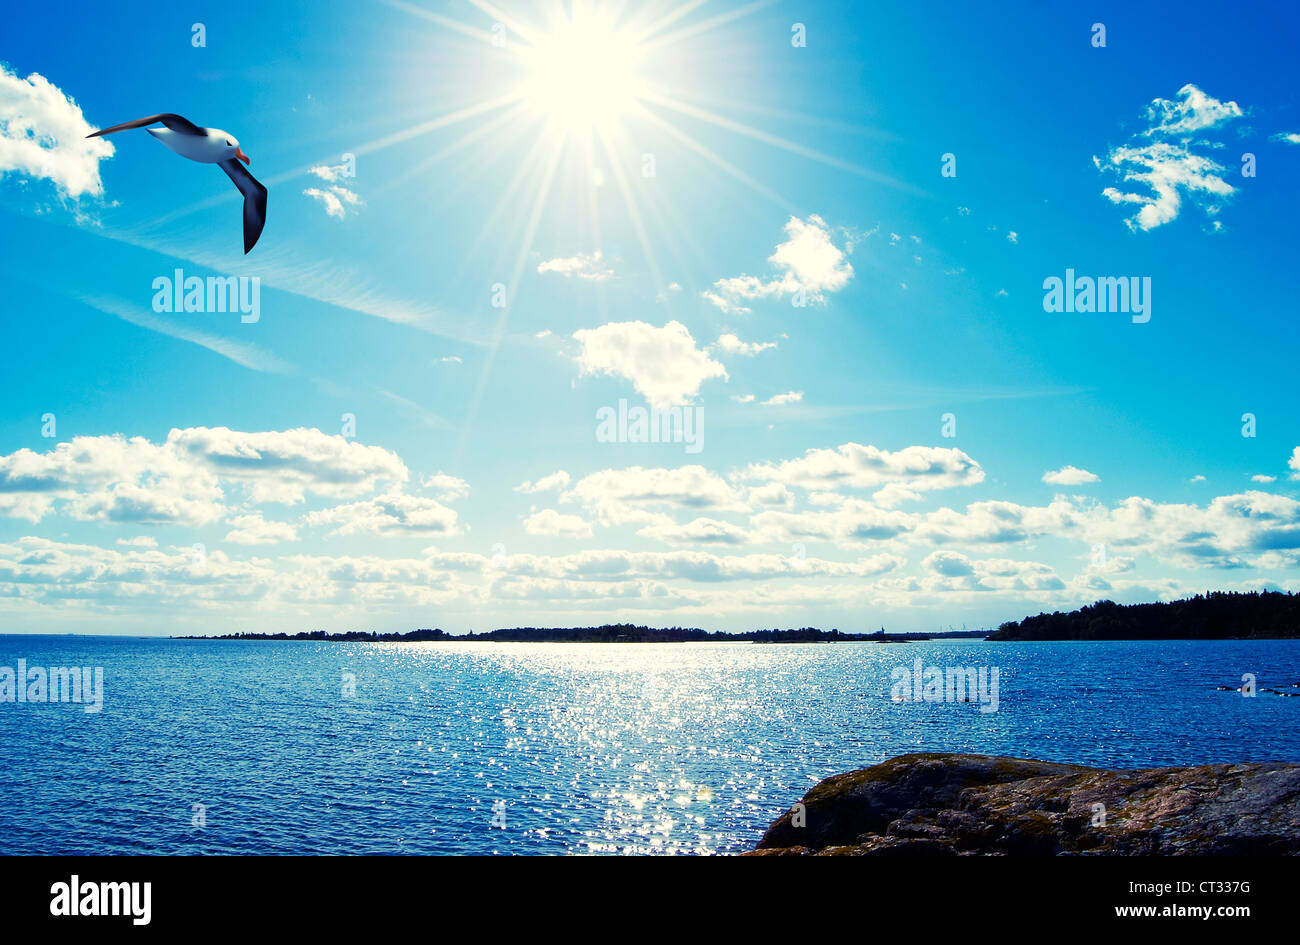 Seagull flotando en el mar, paisajes, fotografía e ilustración Foto de stock